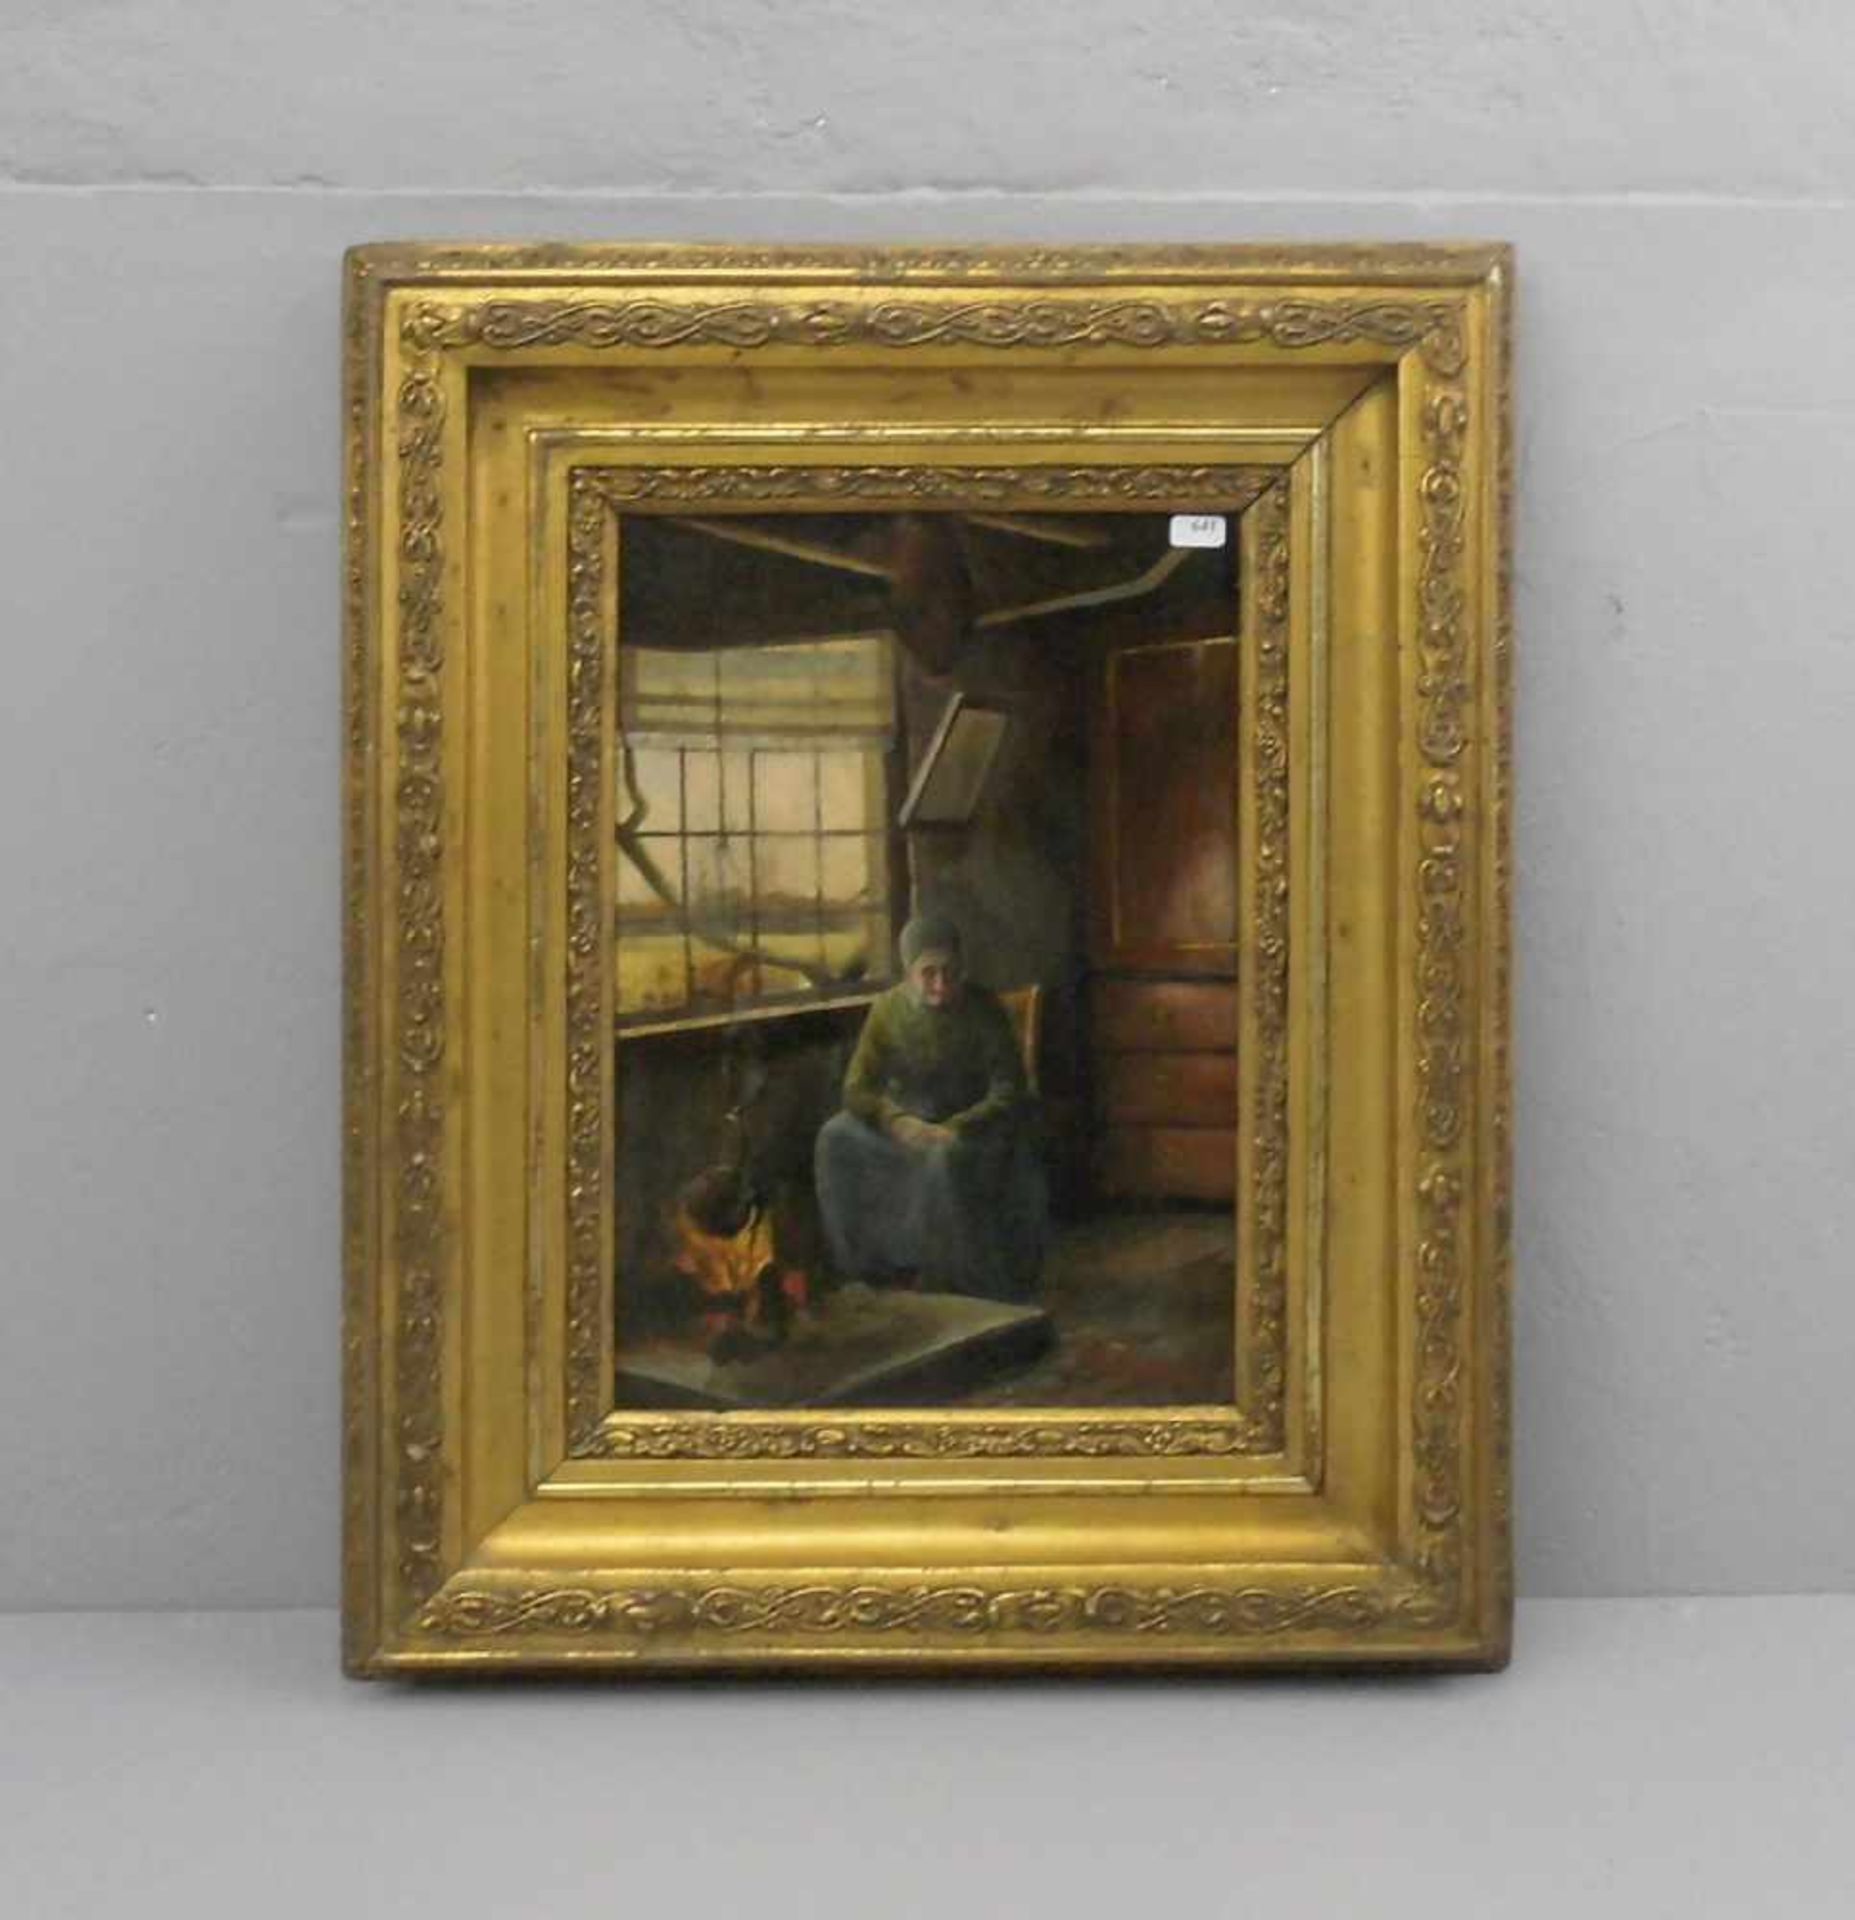 RADENBURG, H. (Maler des 19./20. Jh.), Gemälde / painting: "Interieur mit Frau am Herdfeuer", Öl auf